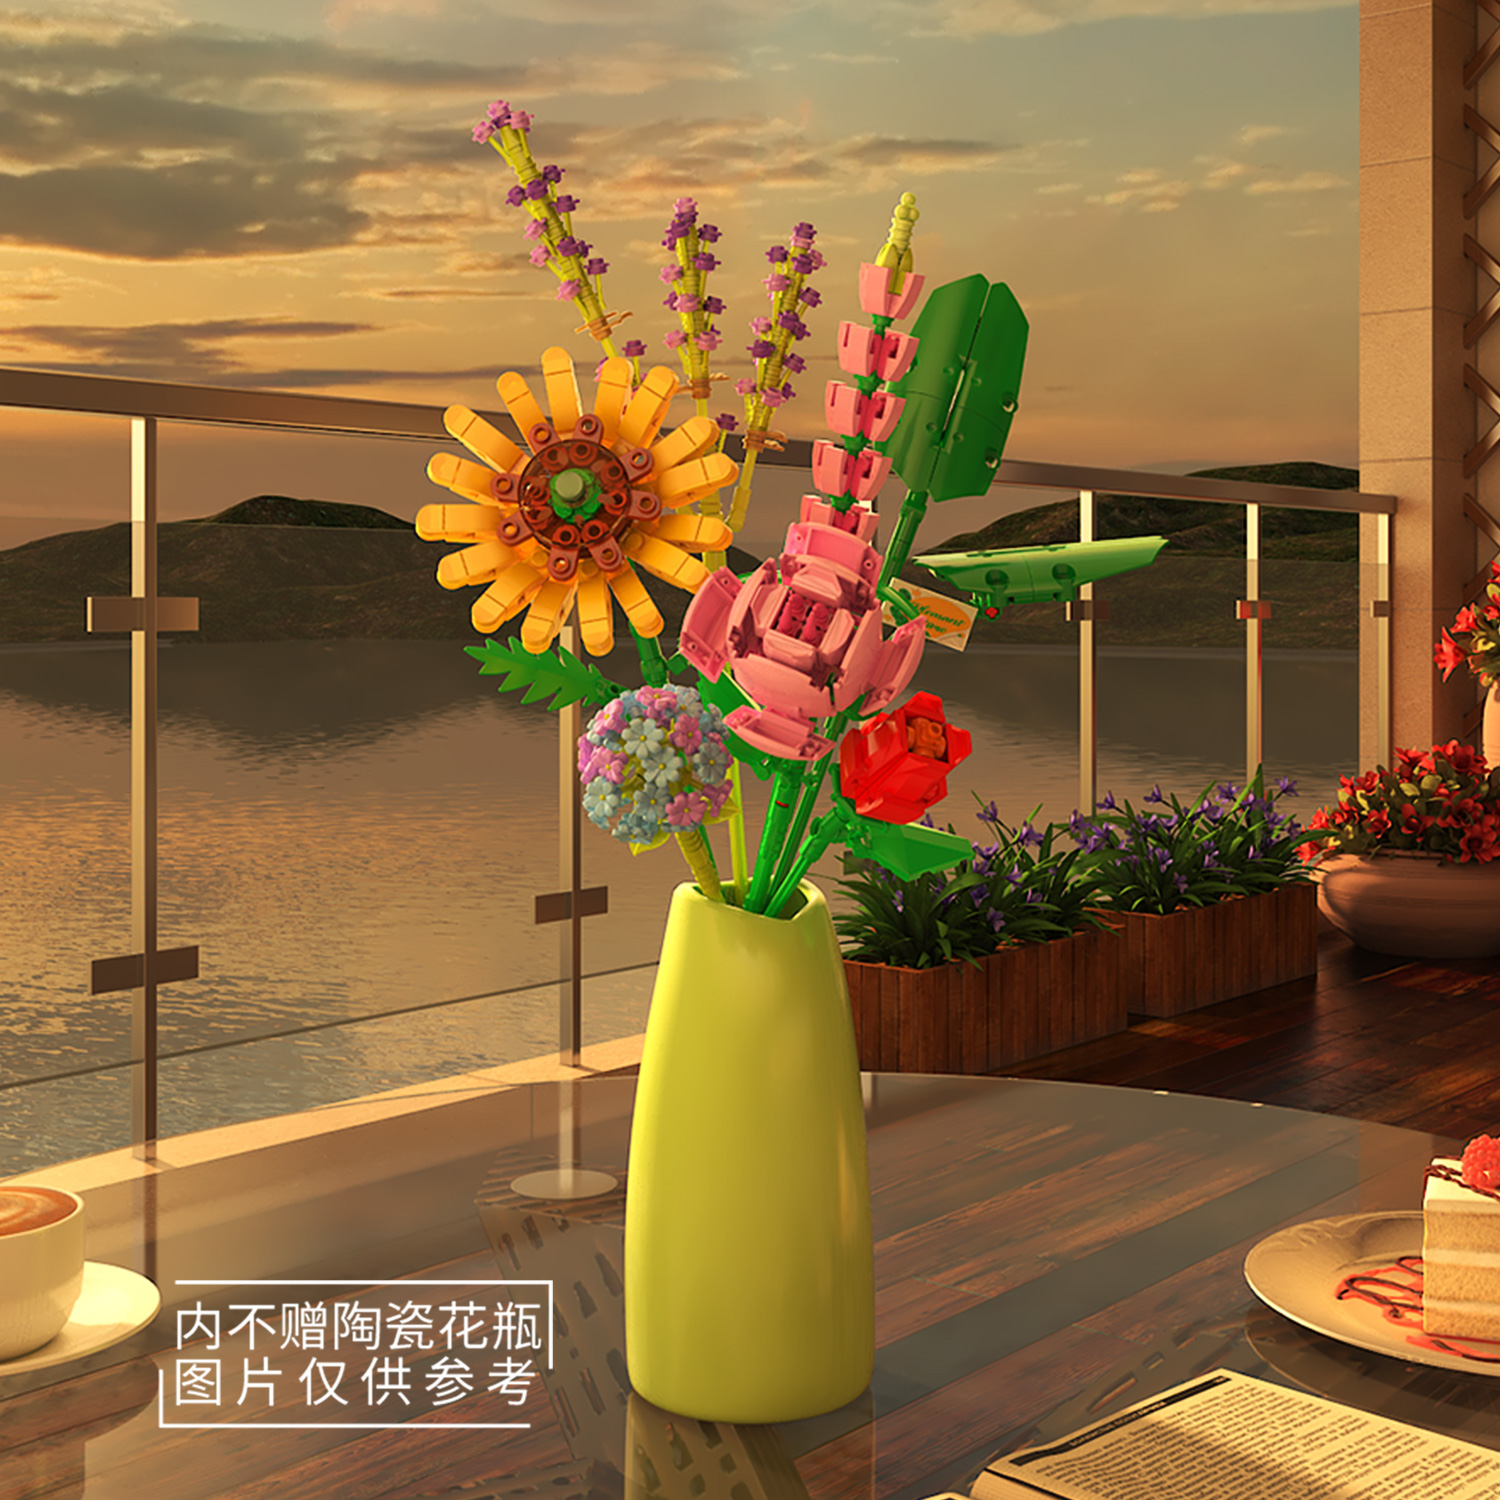 中国积木永生花束表白向日葵拼装玩具客厅办公桌女生情人节礼物